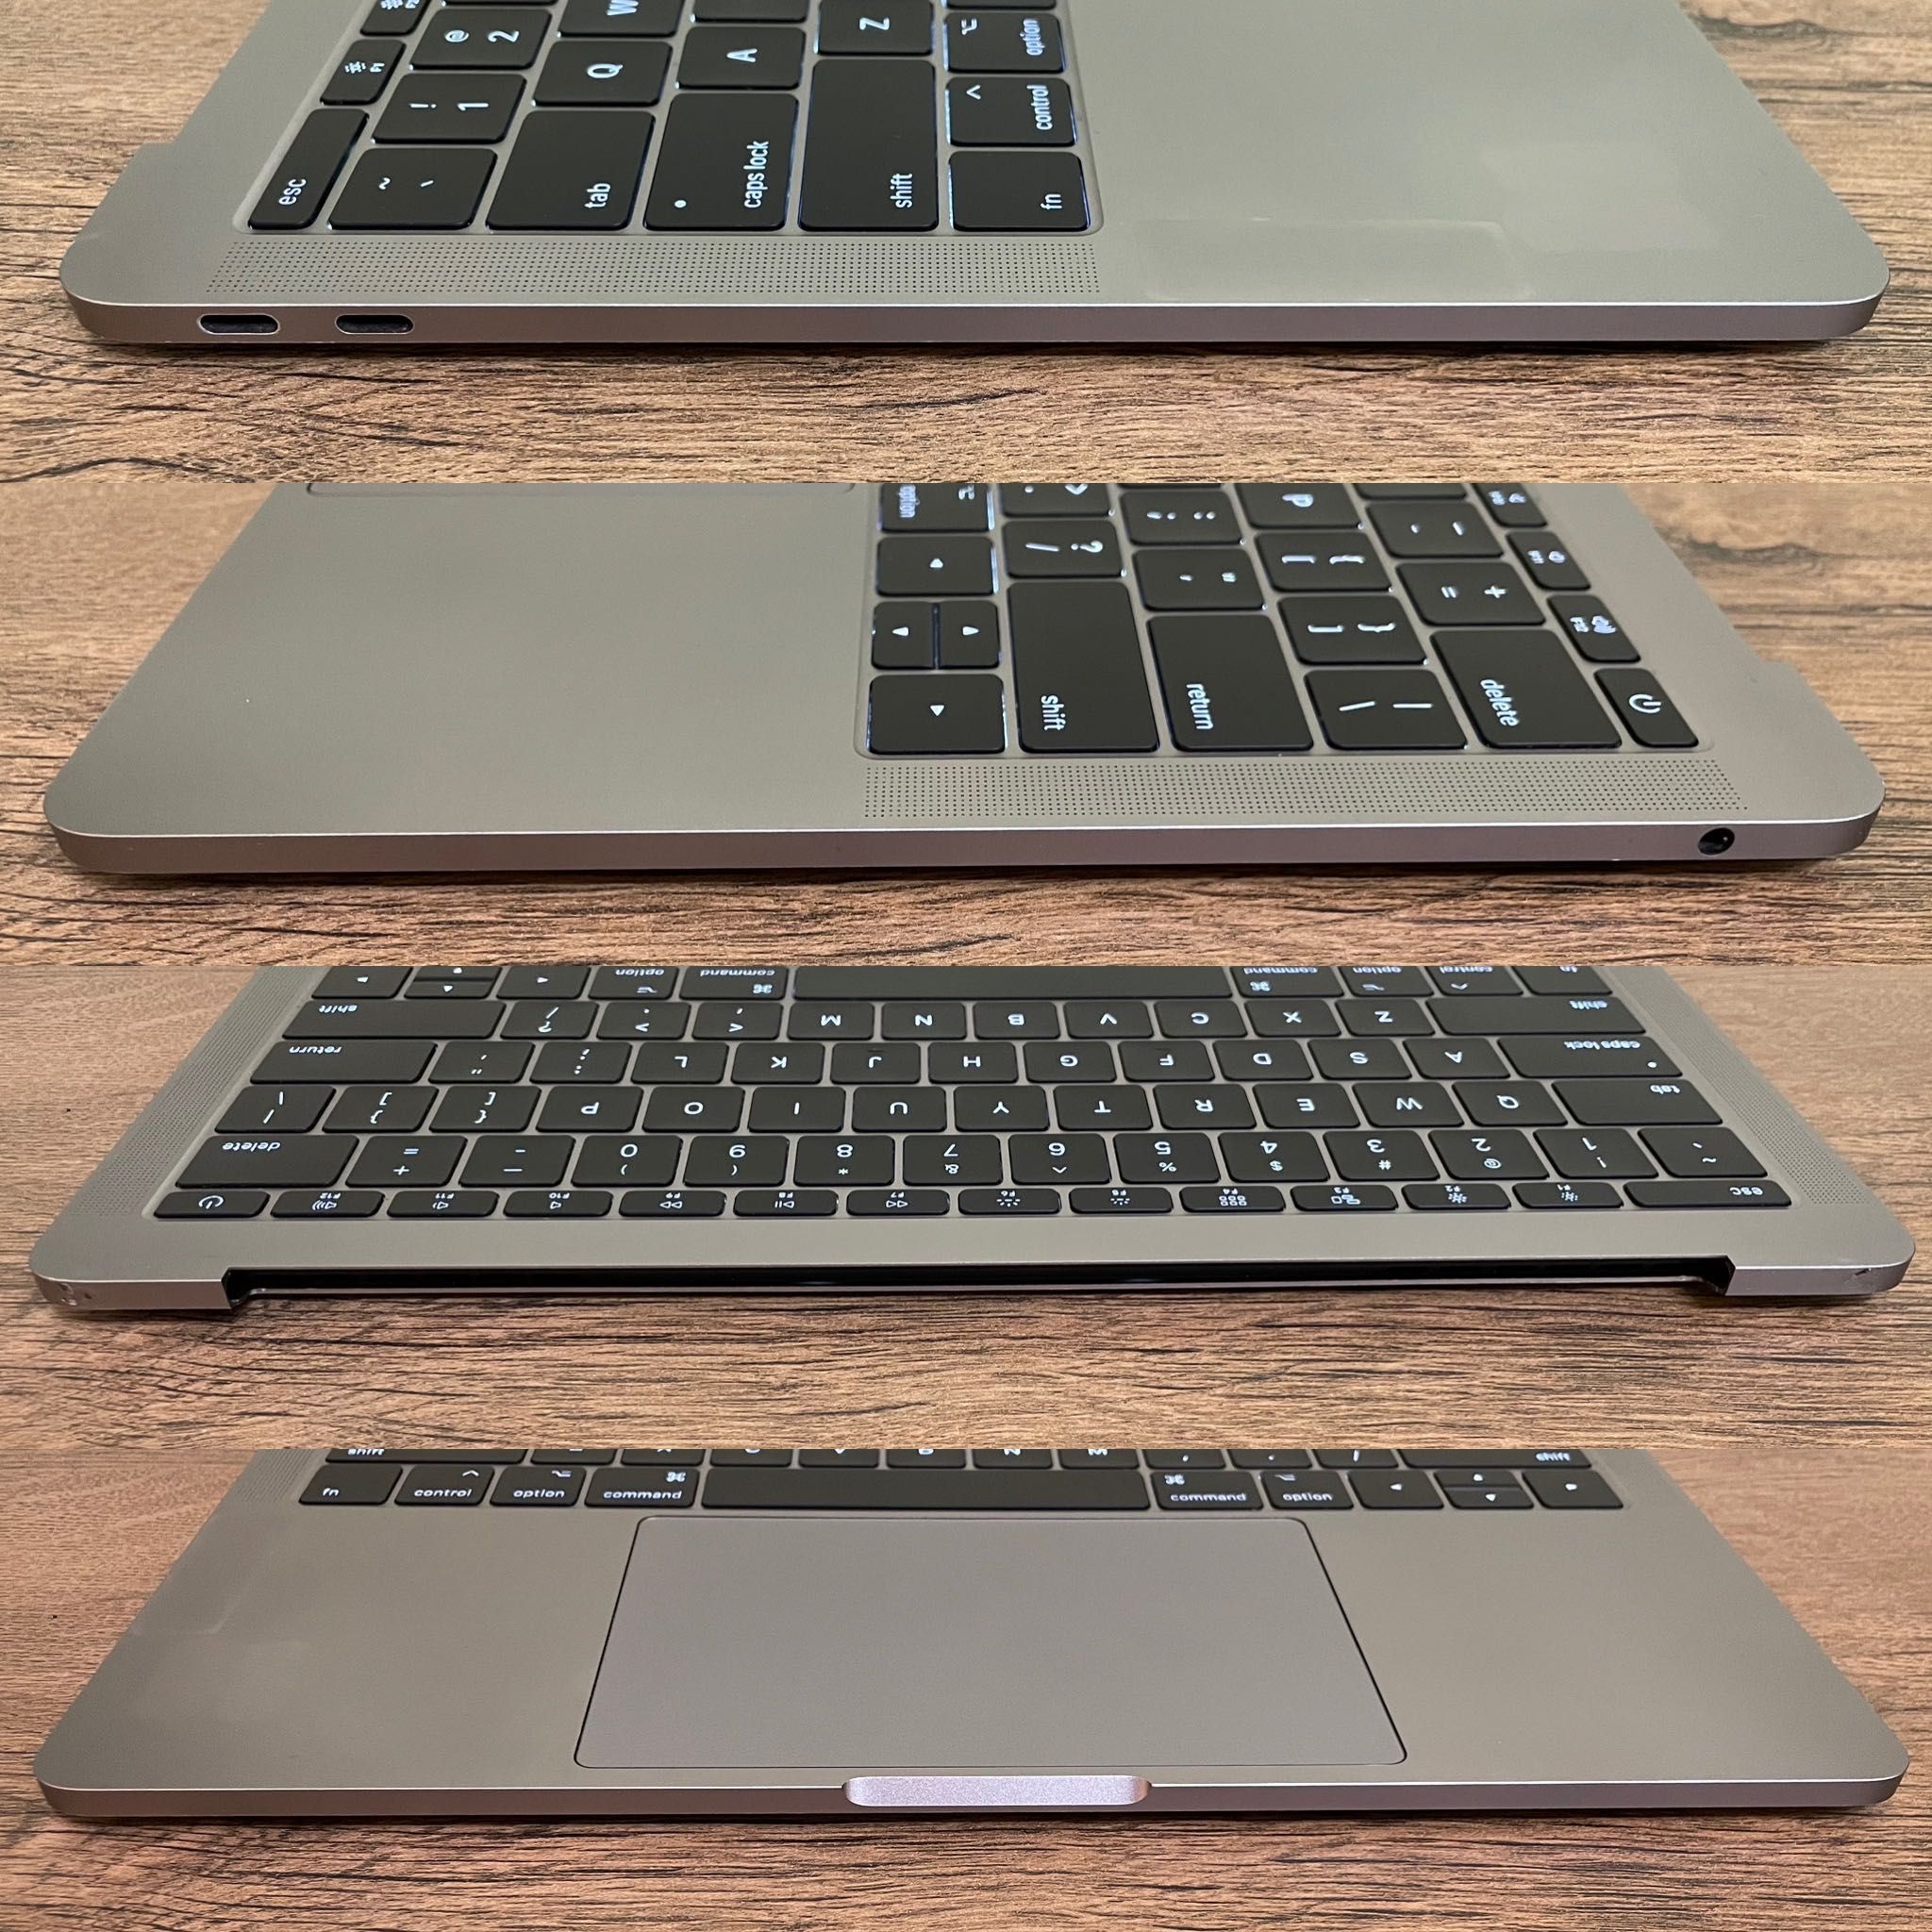 MacBook Pro 13 2016 нижняя часть в сборе. Без блокировок.